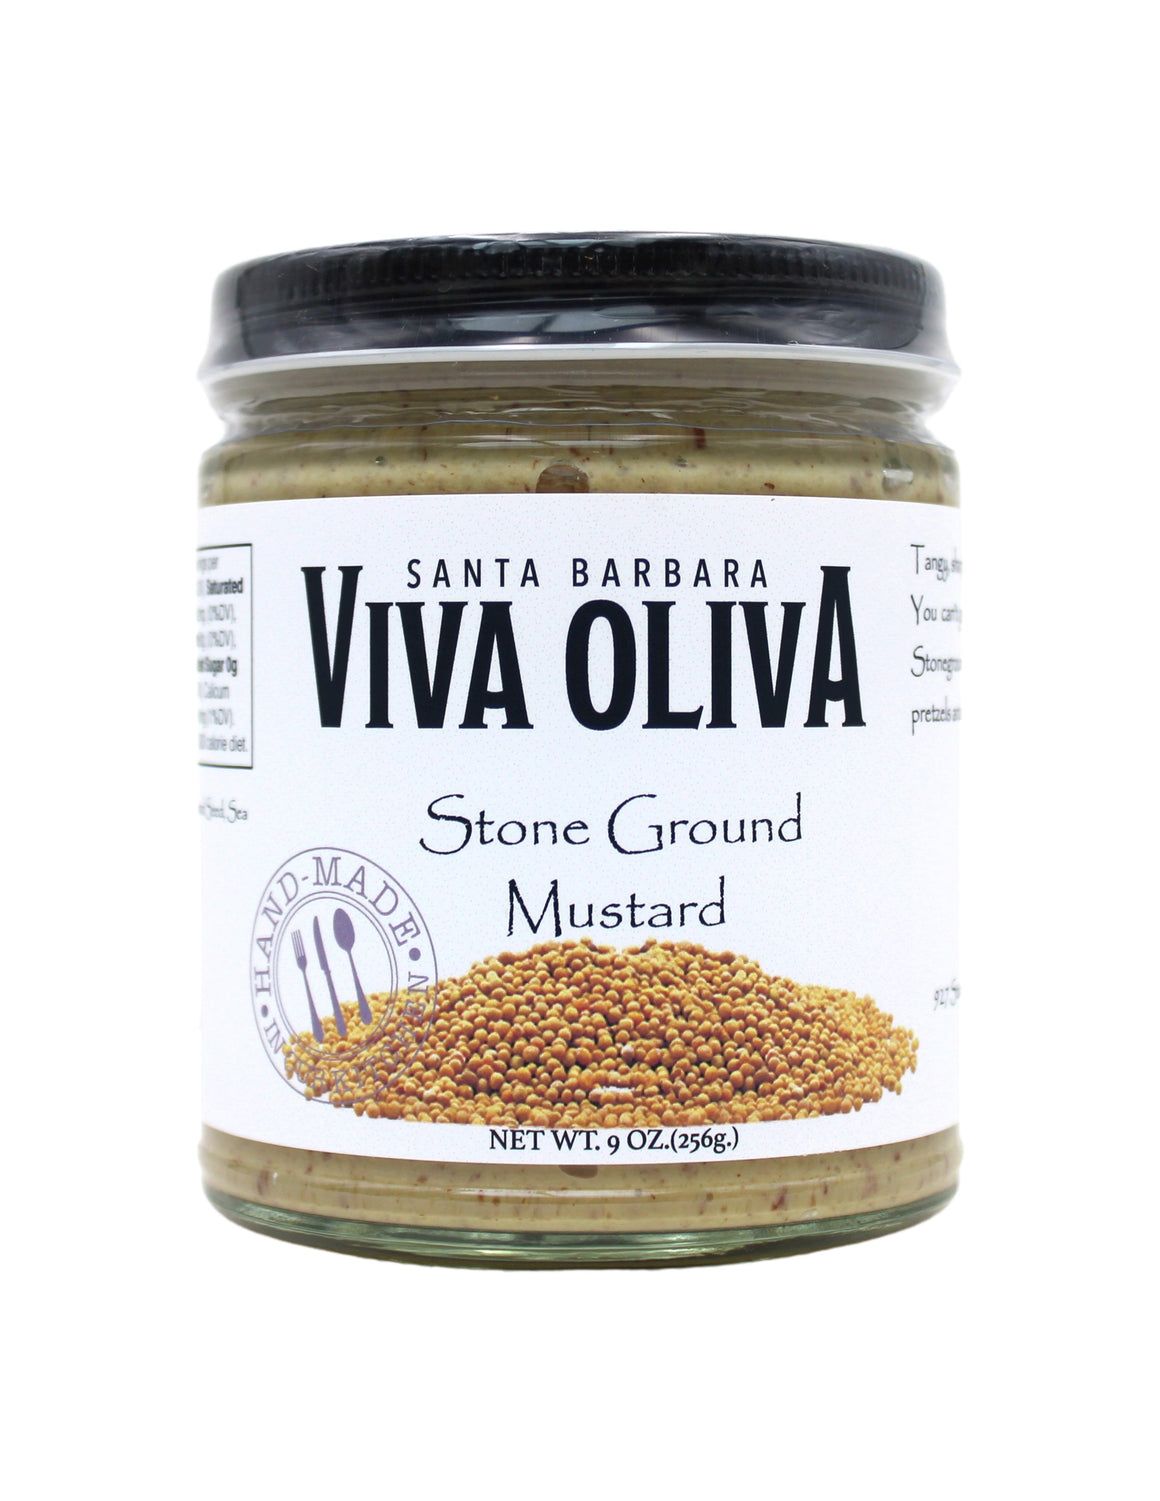 Viva Oliva Mustard - Stone Ground